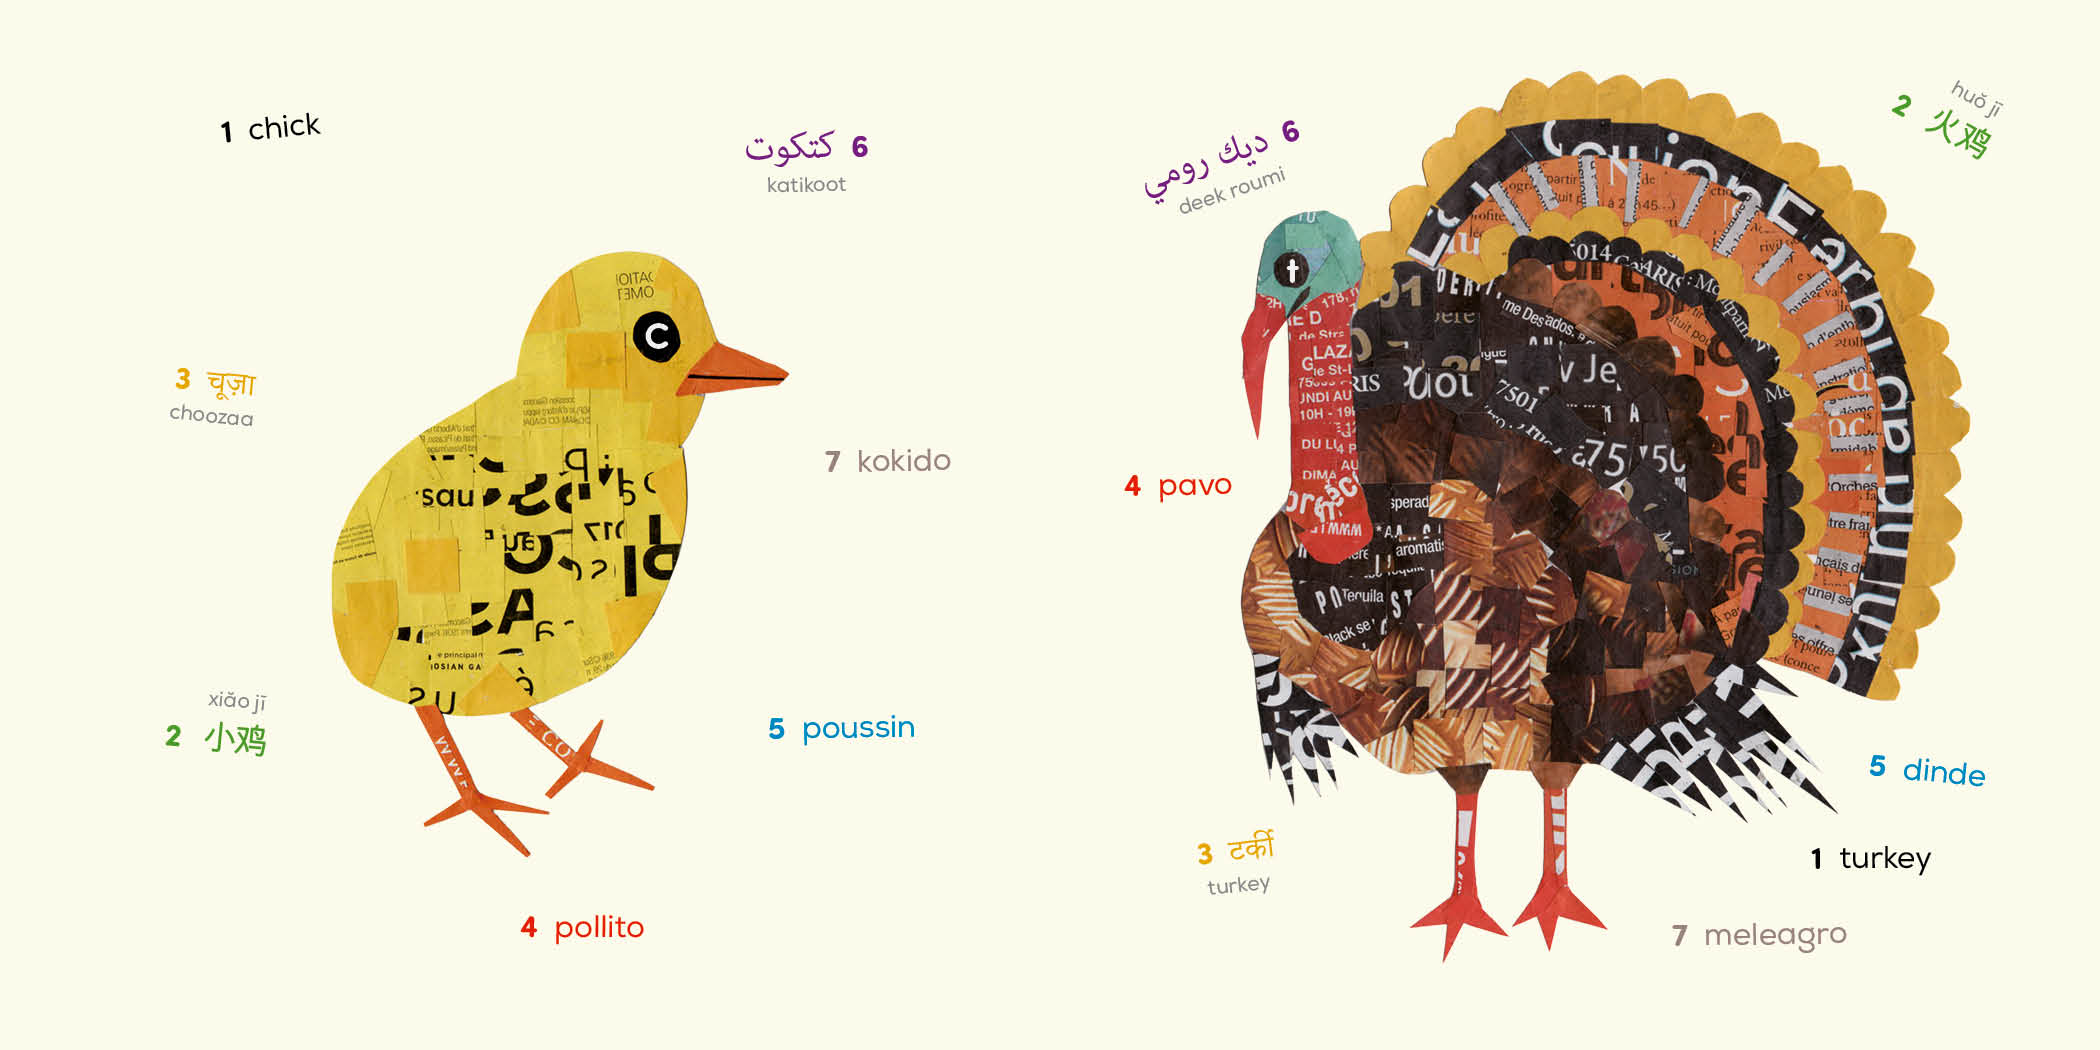 Birds (Multilingual Board Book)